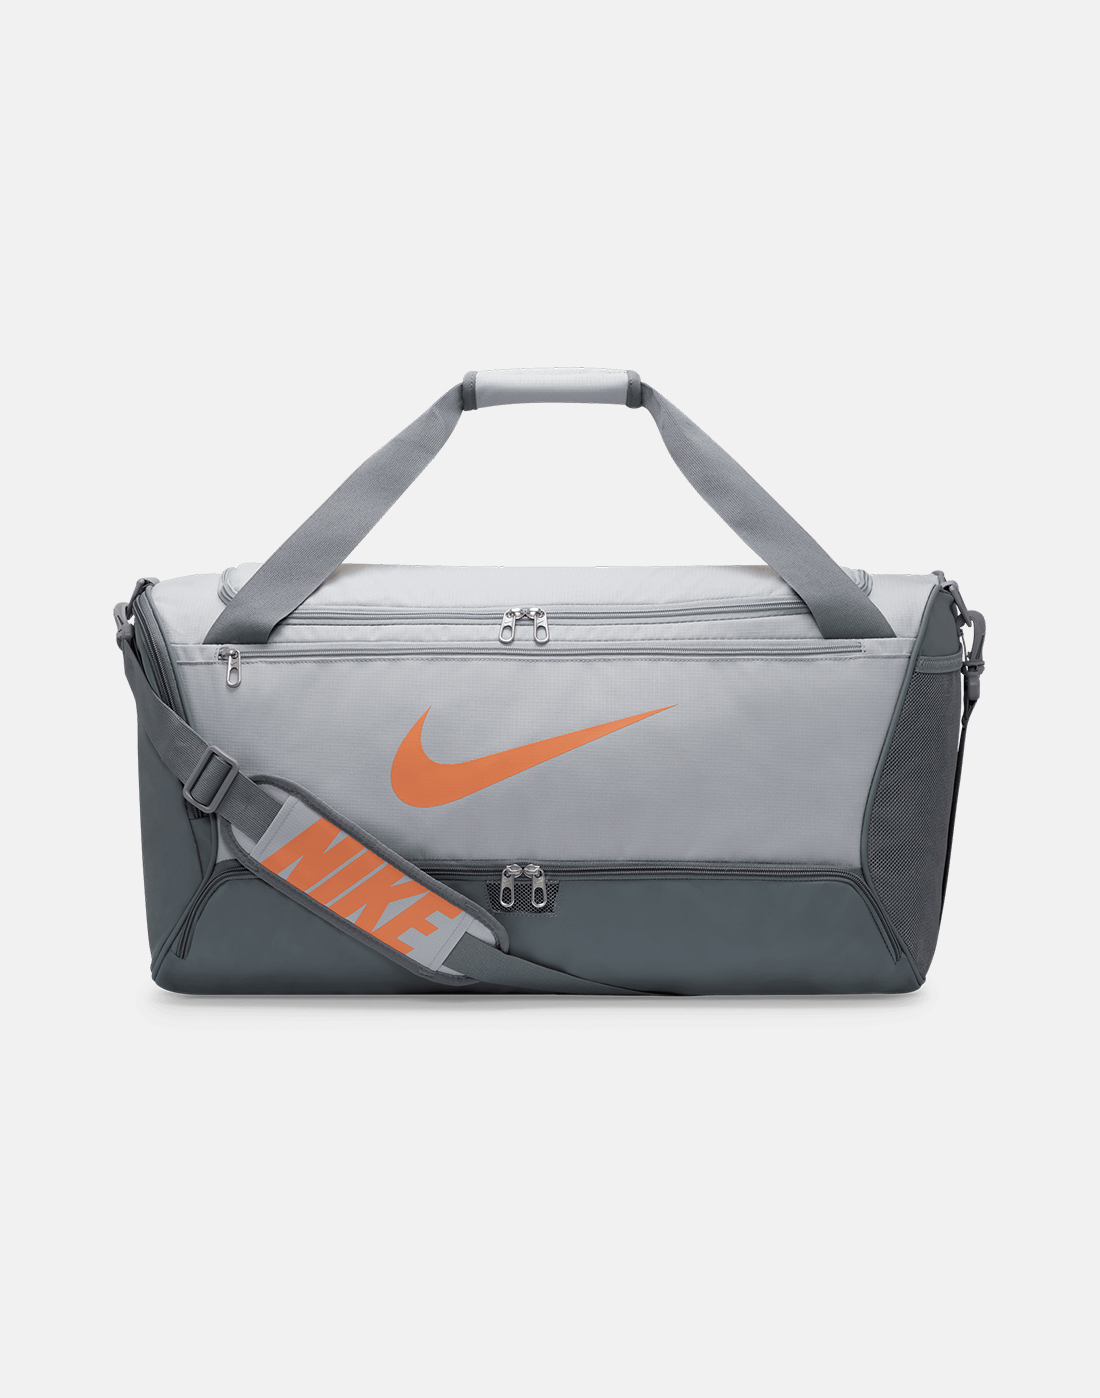 Nike Brasilia Duffle Bag - Grey | Life Style Sports UK